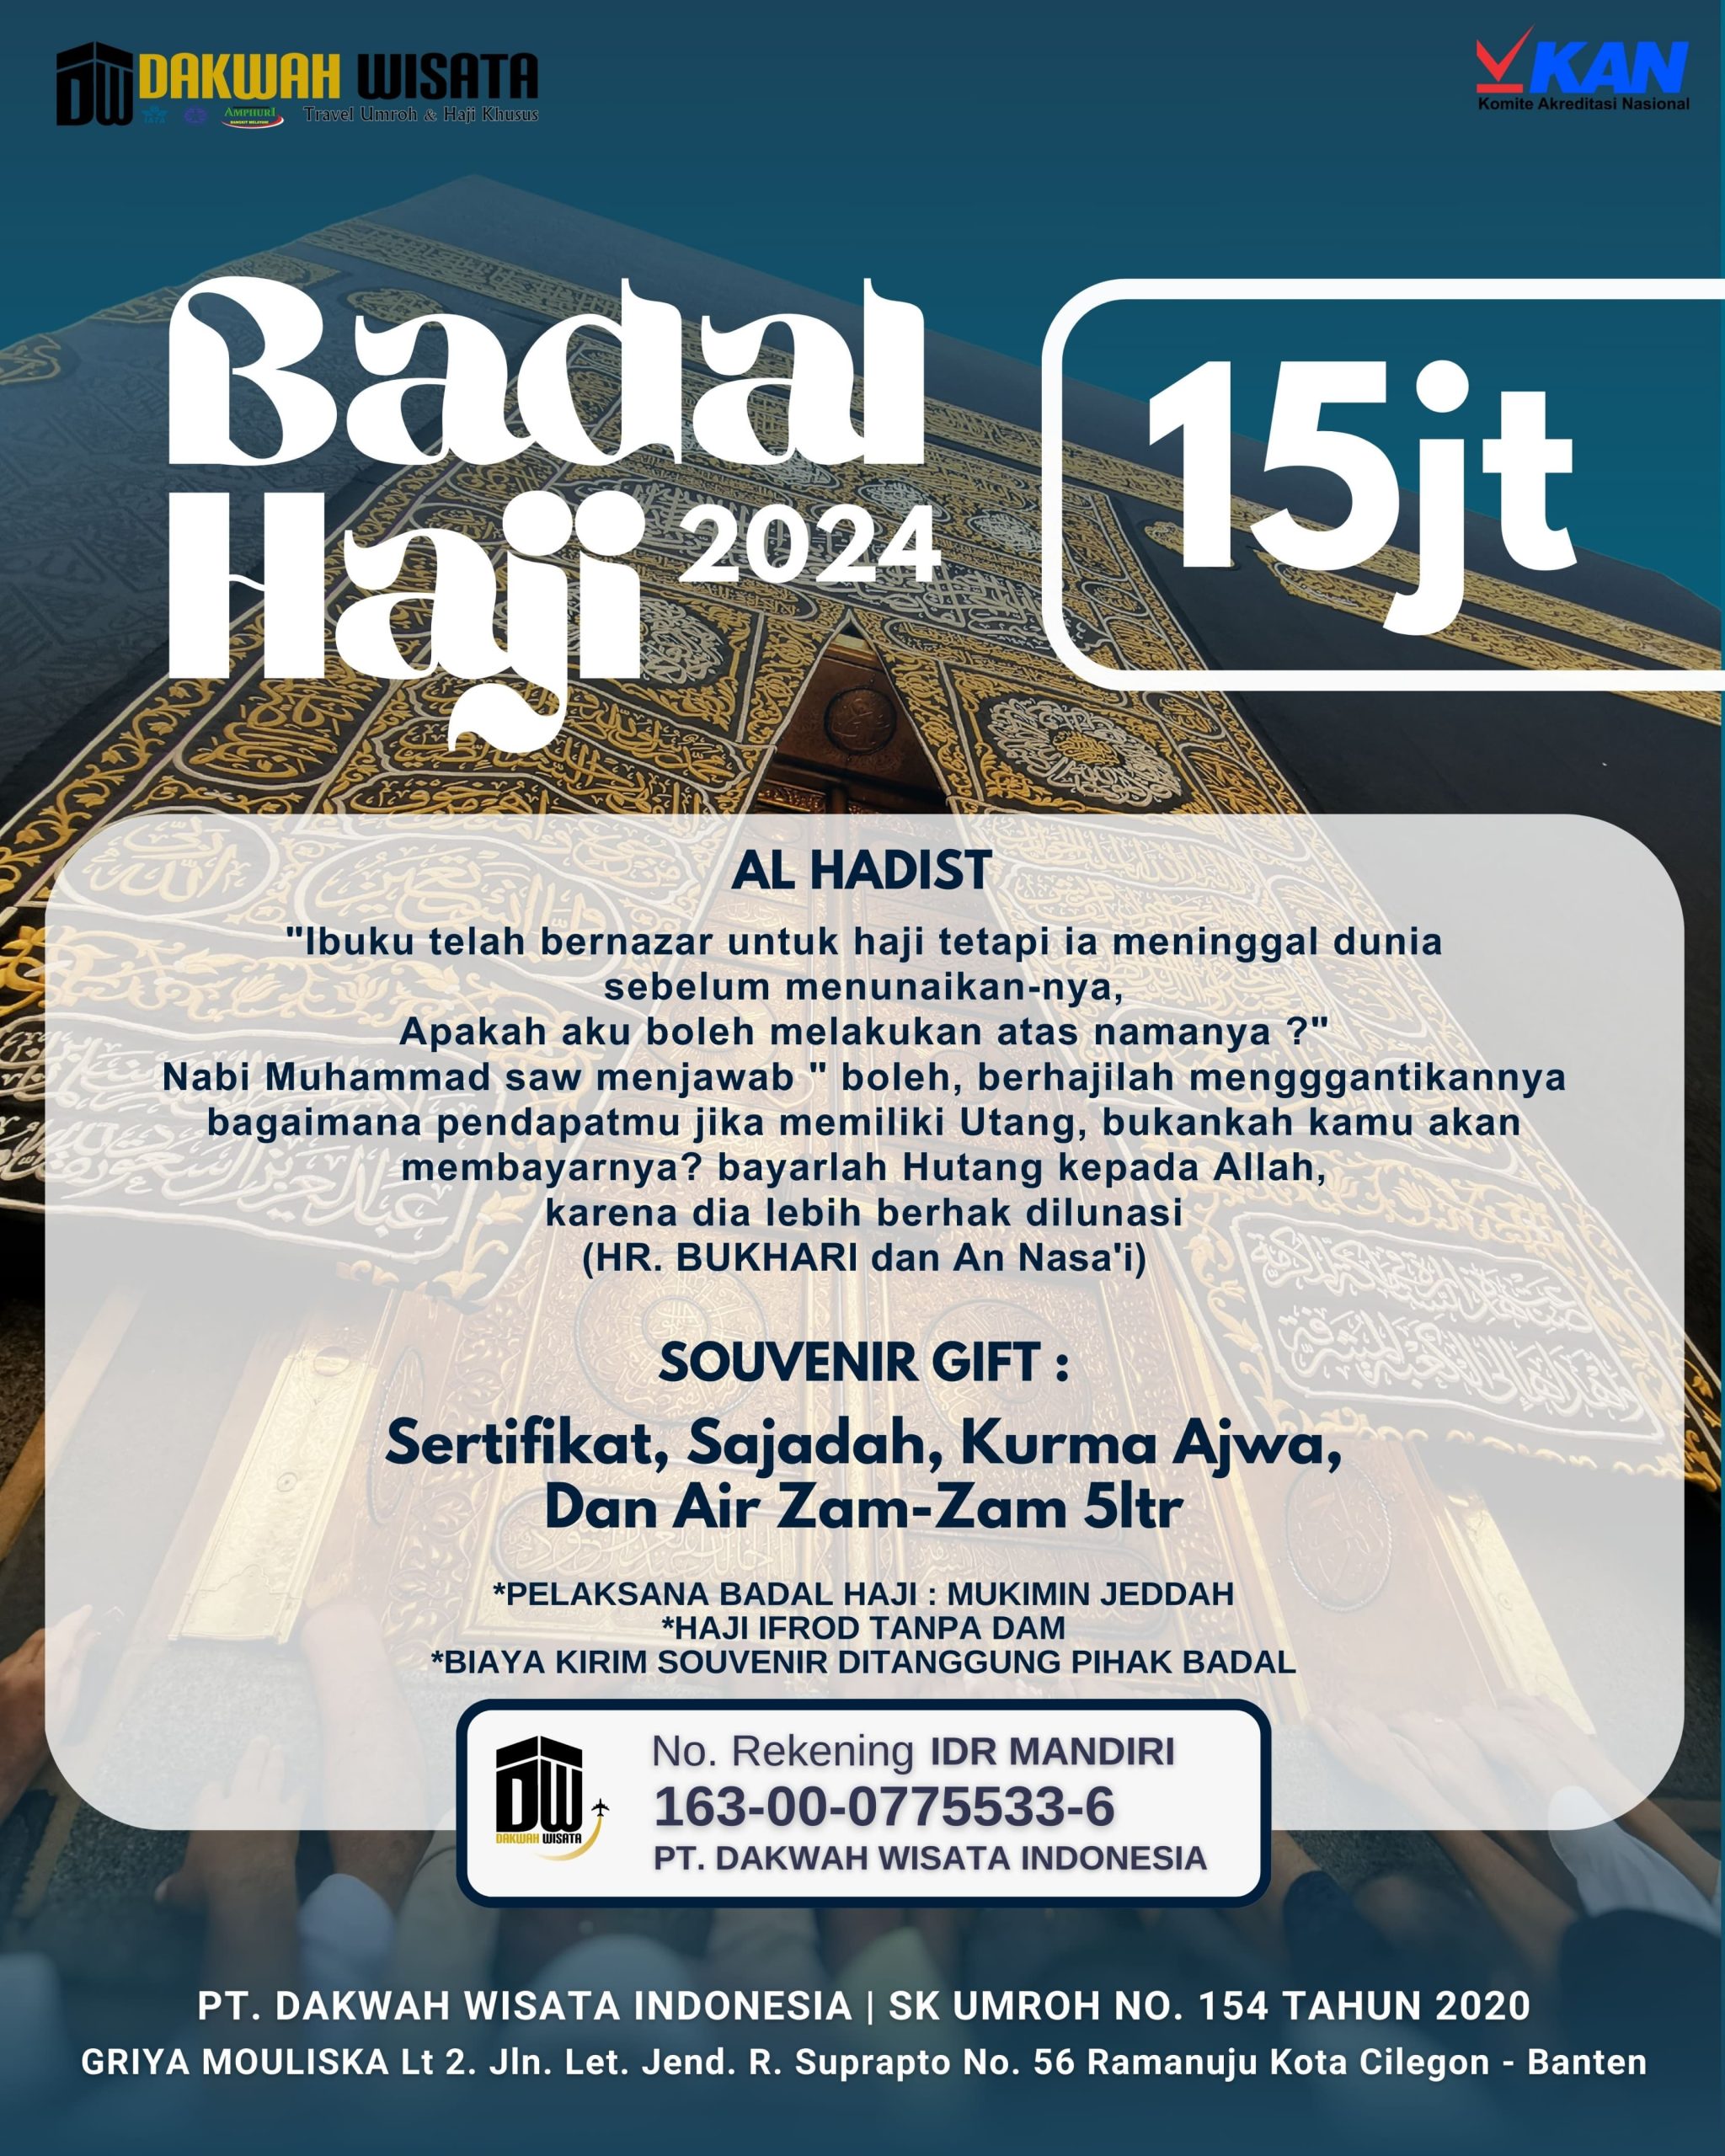 Badal Haji Murah by dakwah wisata tour